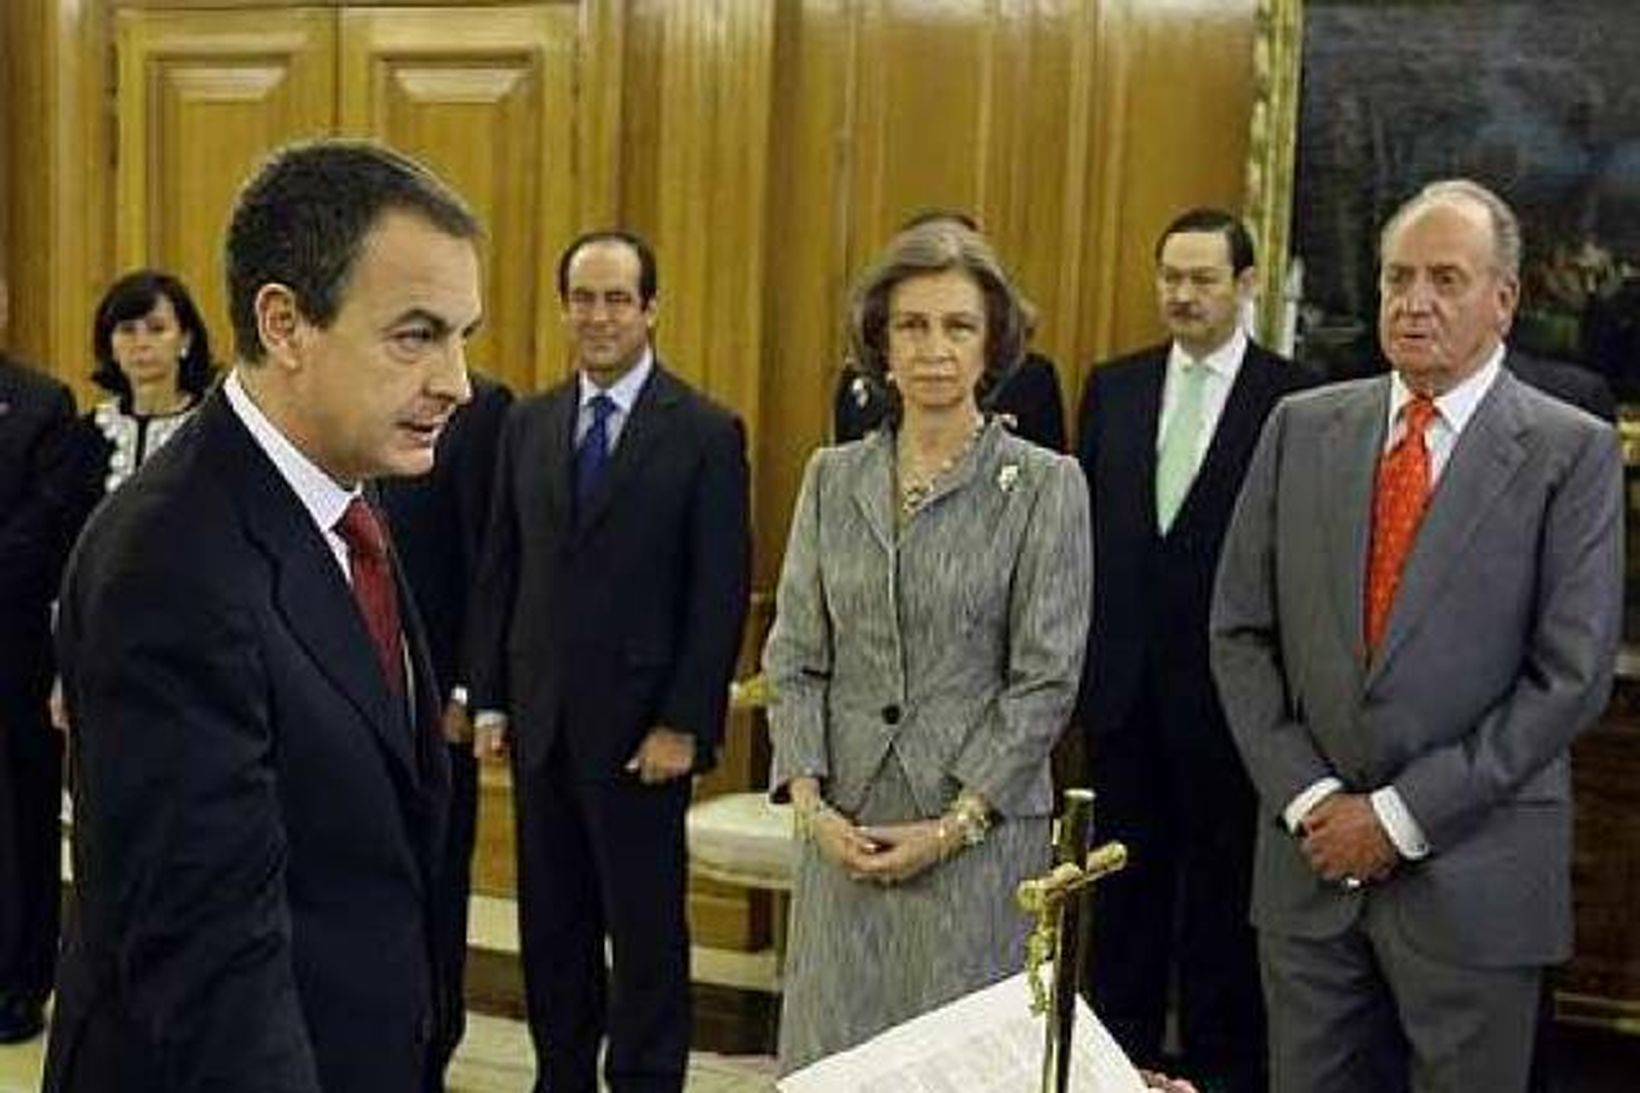 Jose Luis Rodriguez Zapatero sór embættiseið í viðurvist Juan Carlos, …